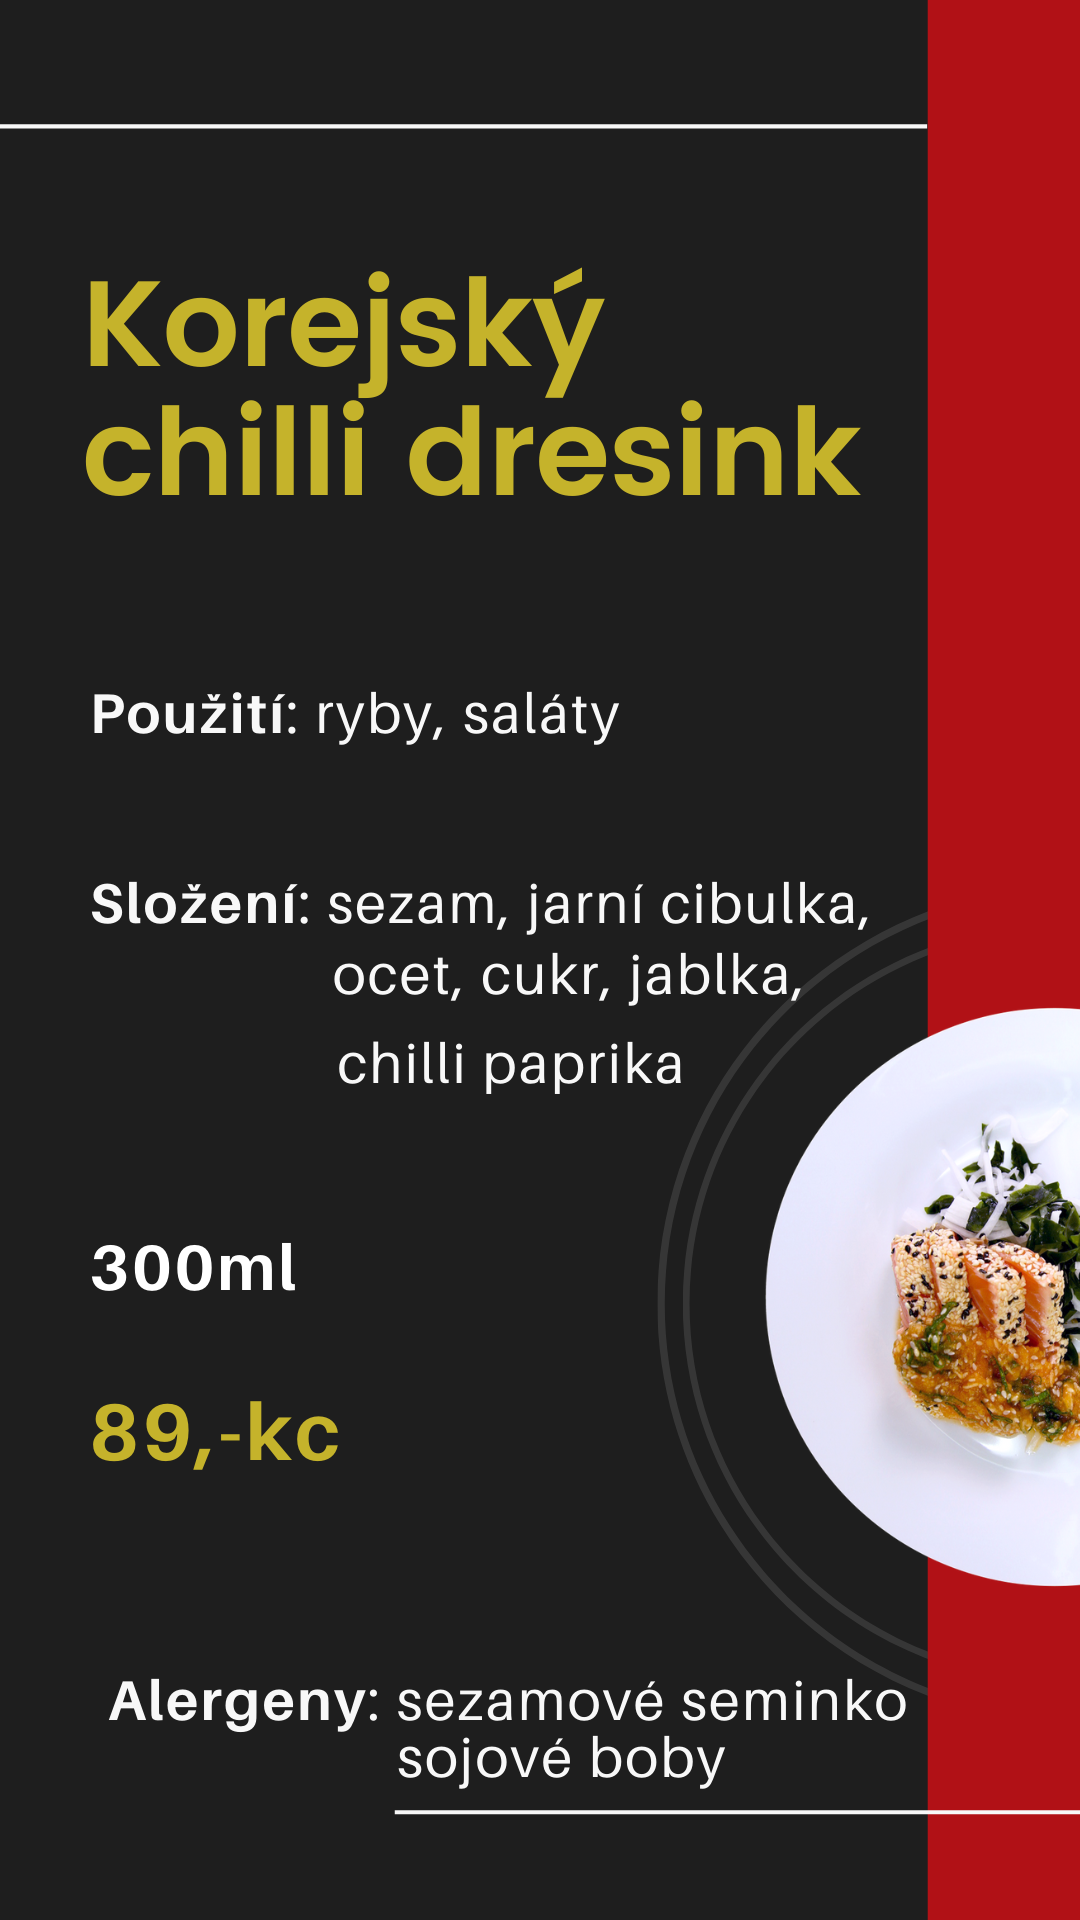 Korean Chili Dresink